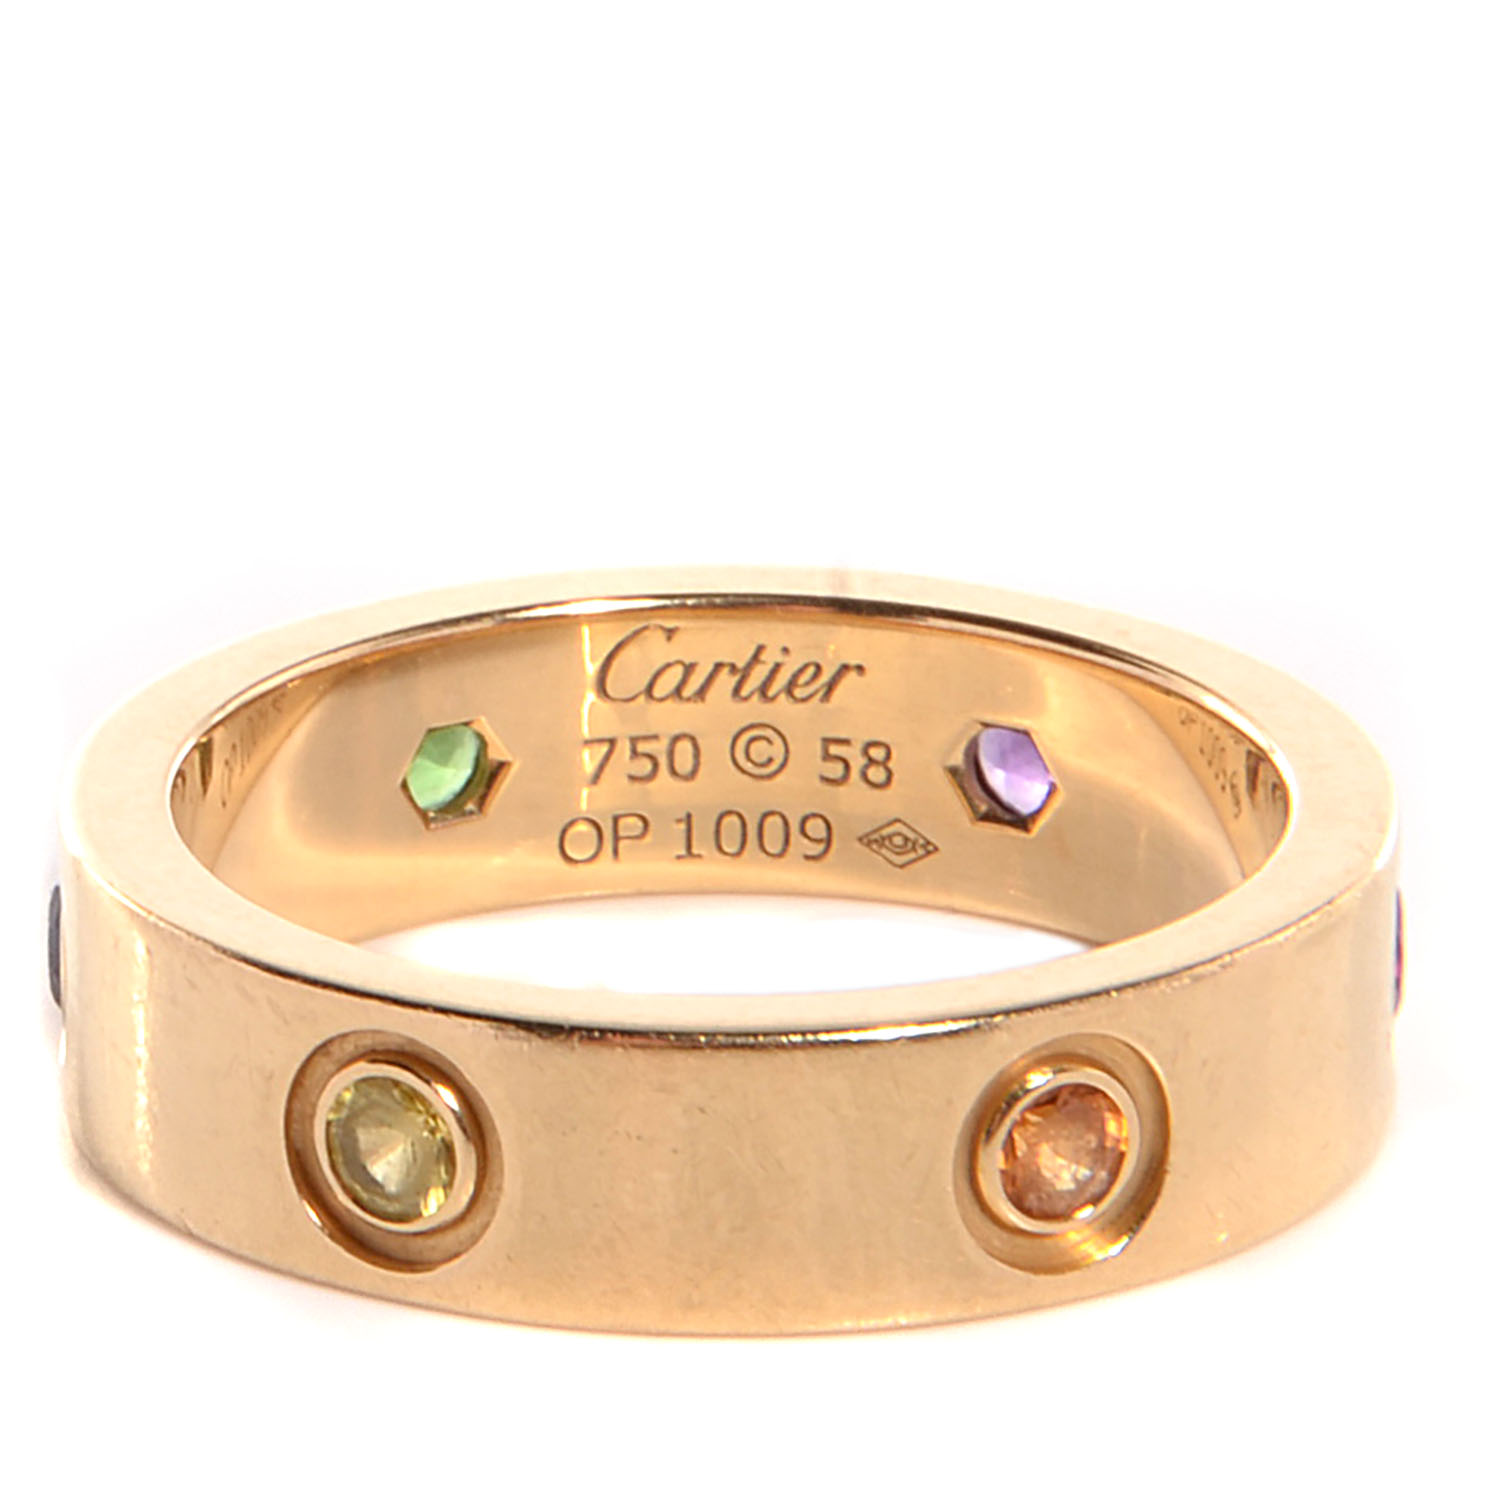 Cartier Ring Chart